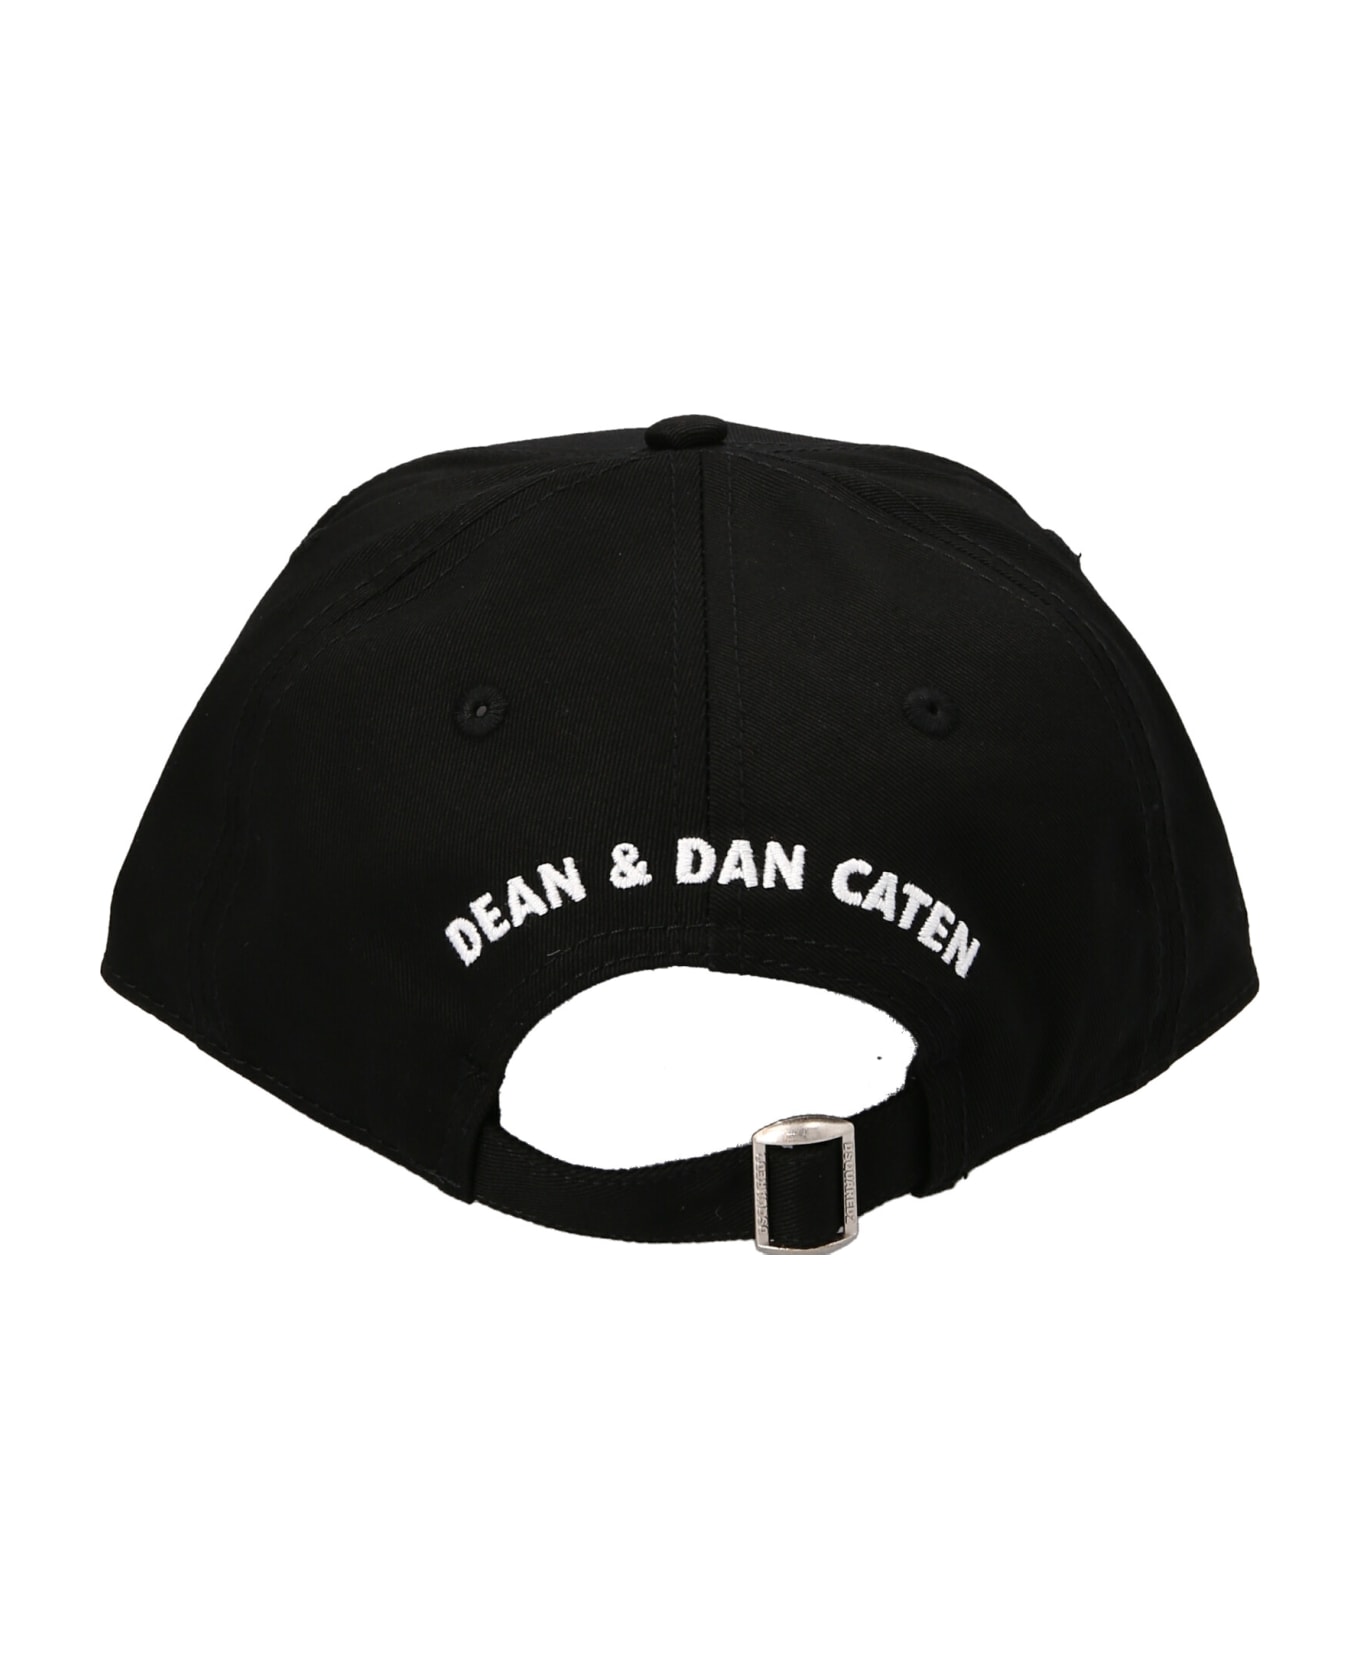 Dsquared2 24/7 Cap - Black 帽子